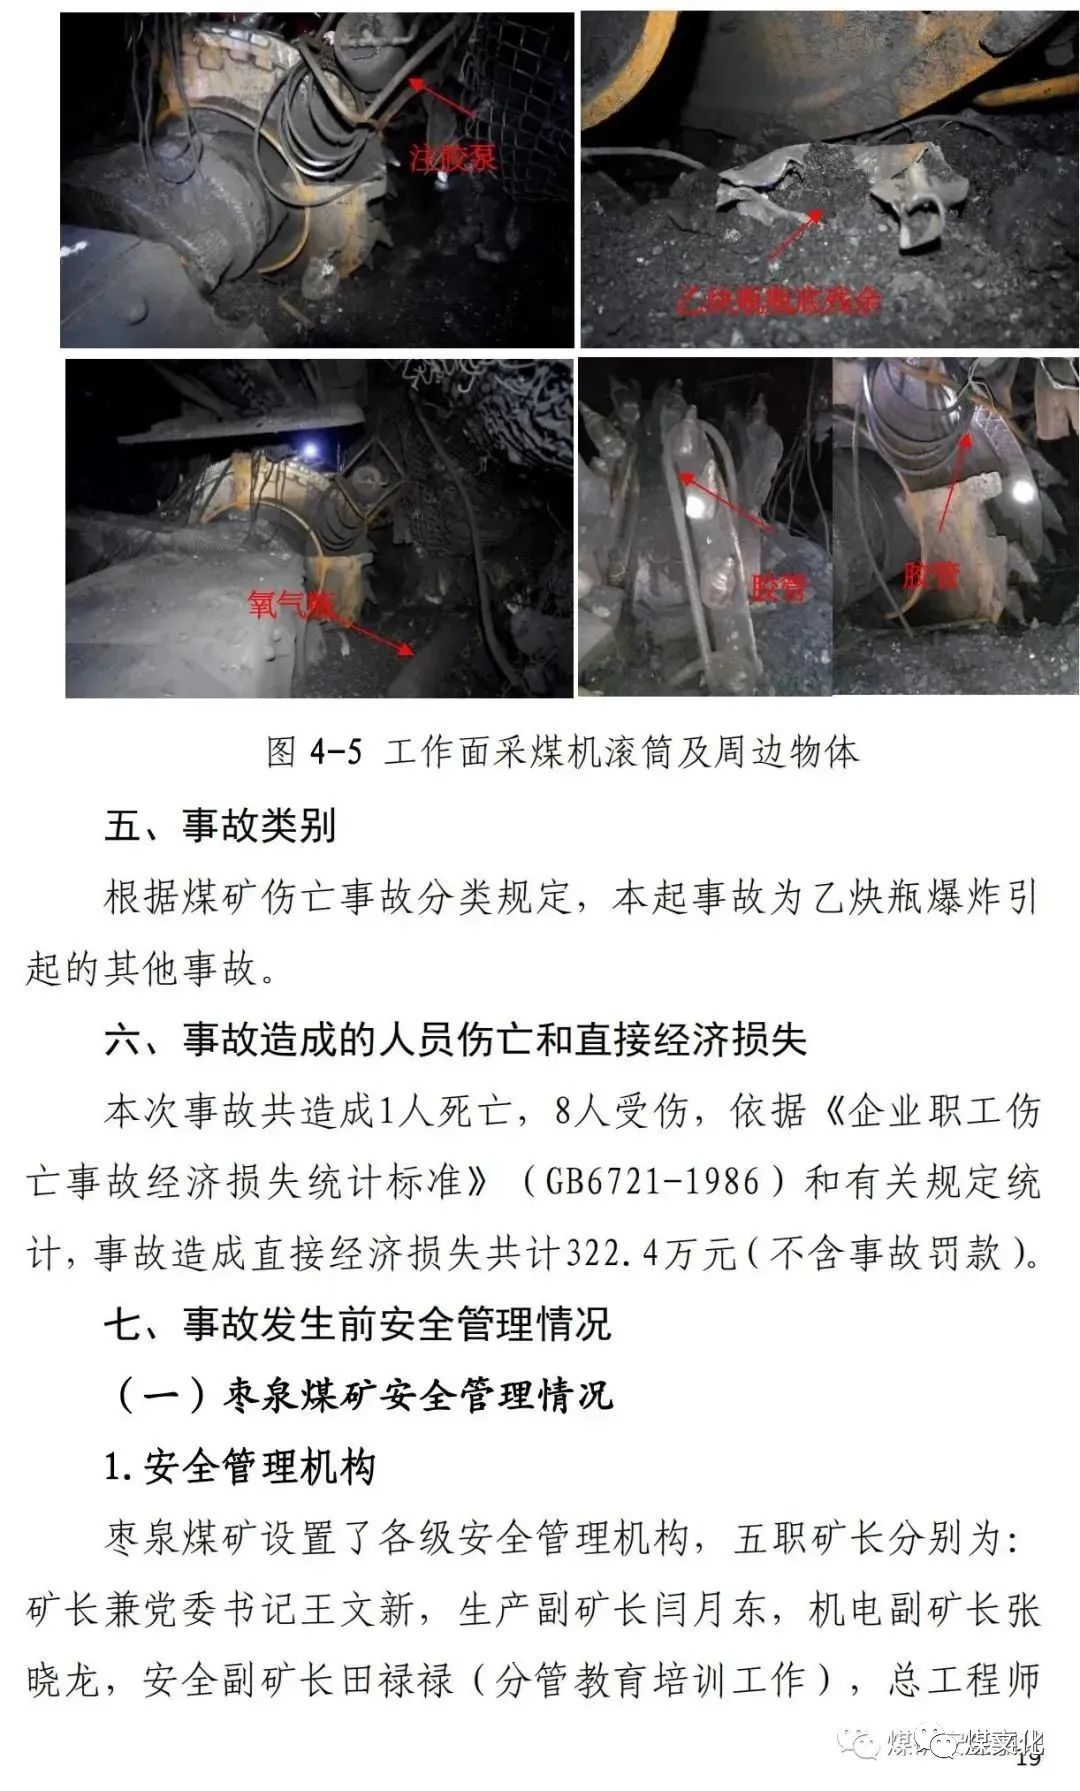 国家能源集团宁夏煤业公司枣泉煤矿27乙炔瓶爆炸事故调查报告